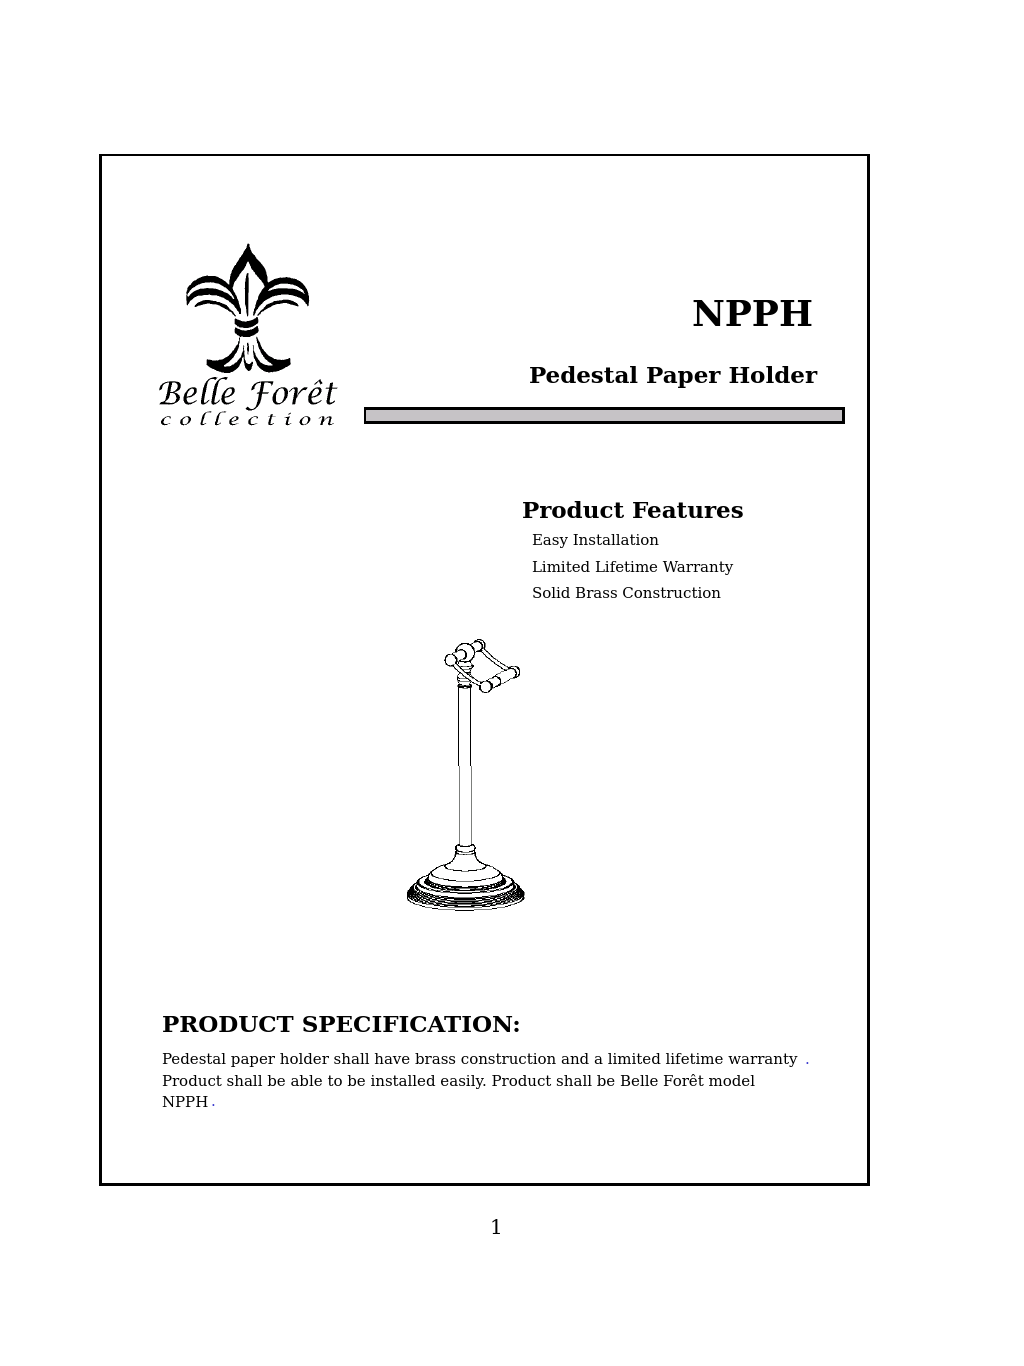 Belle Foret NPPH Pedestal Paper